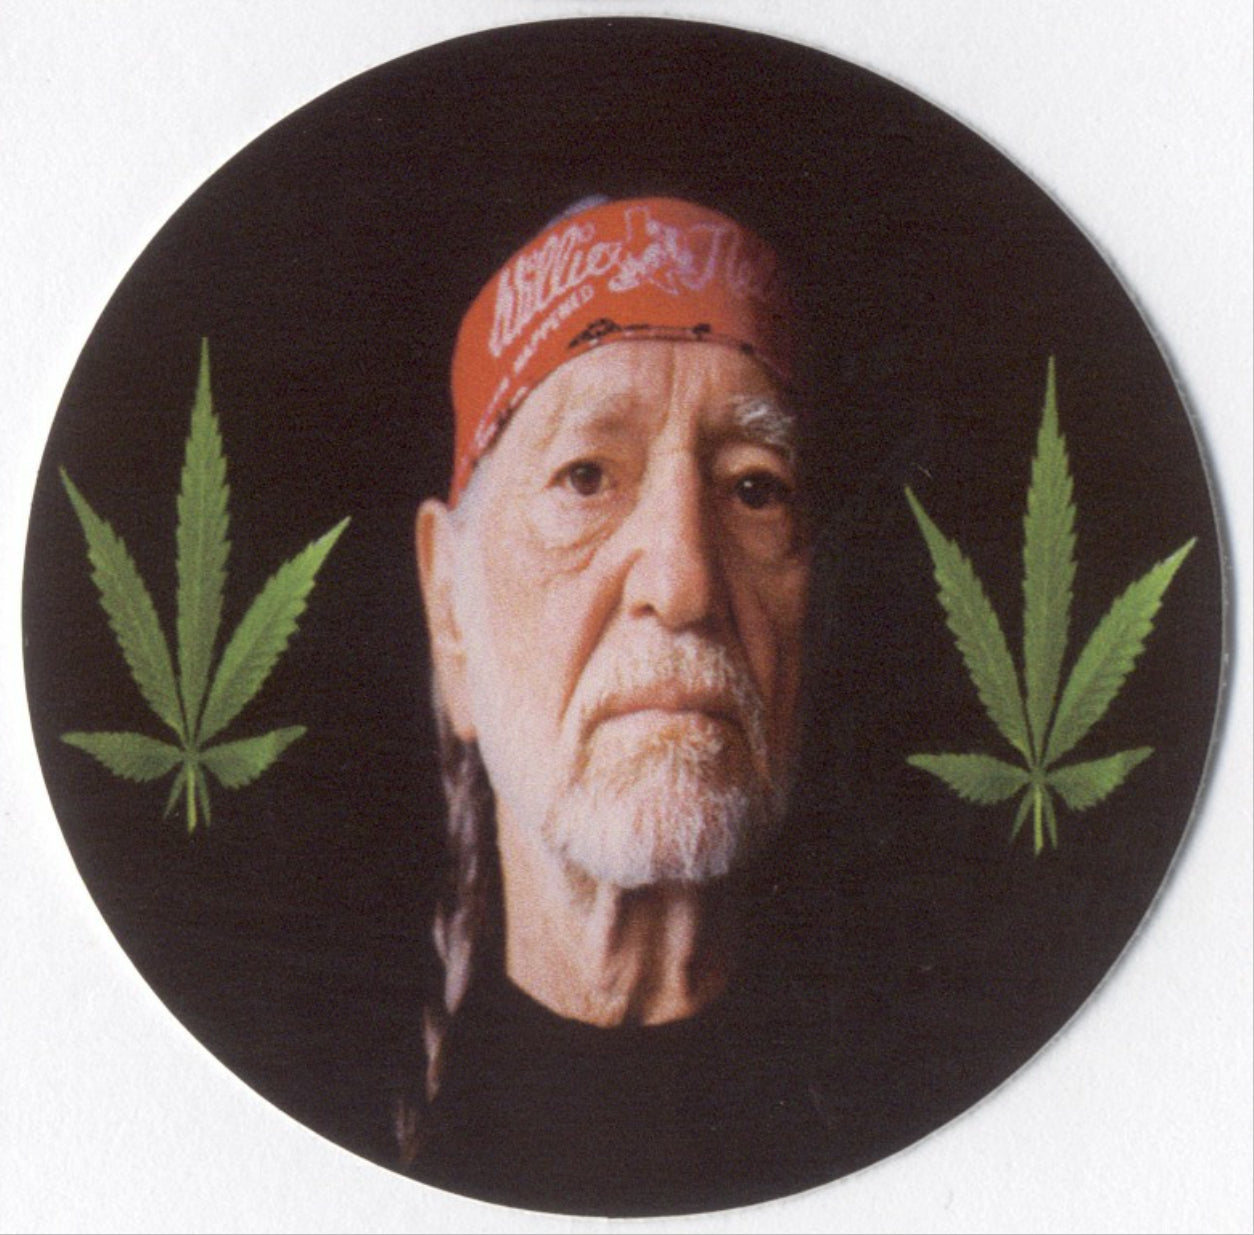 Willie Nelson vinyl sticker